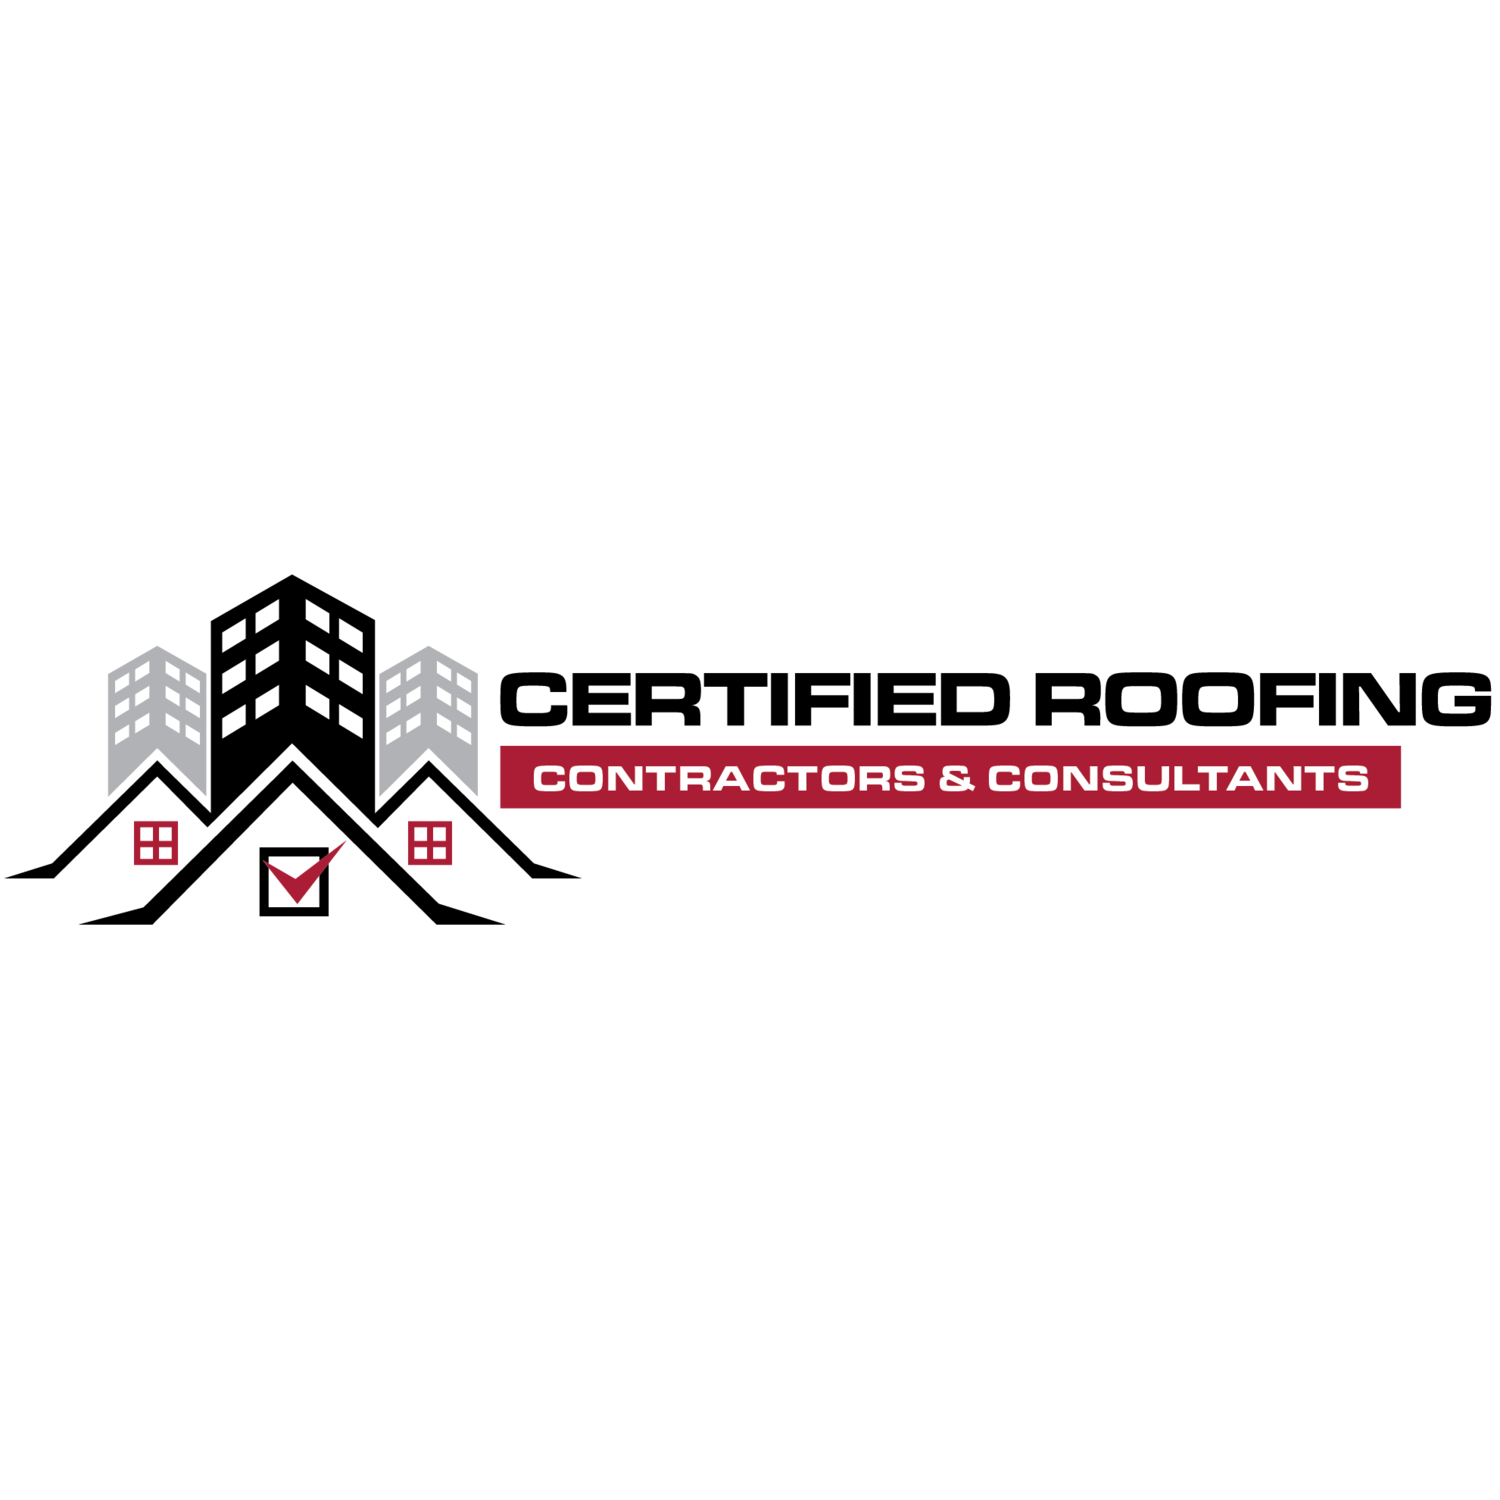 Certified Roofing Contractors & Consultants